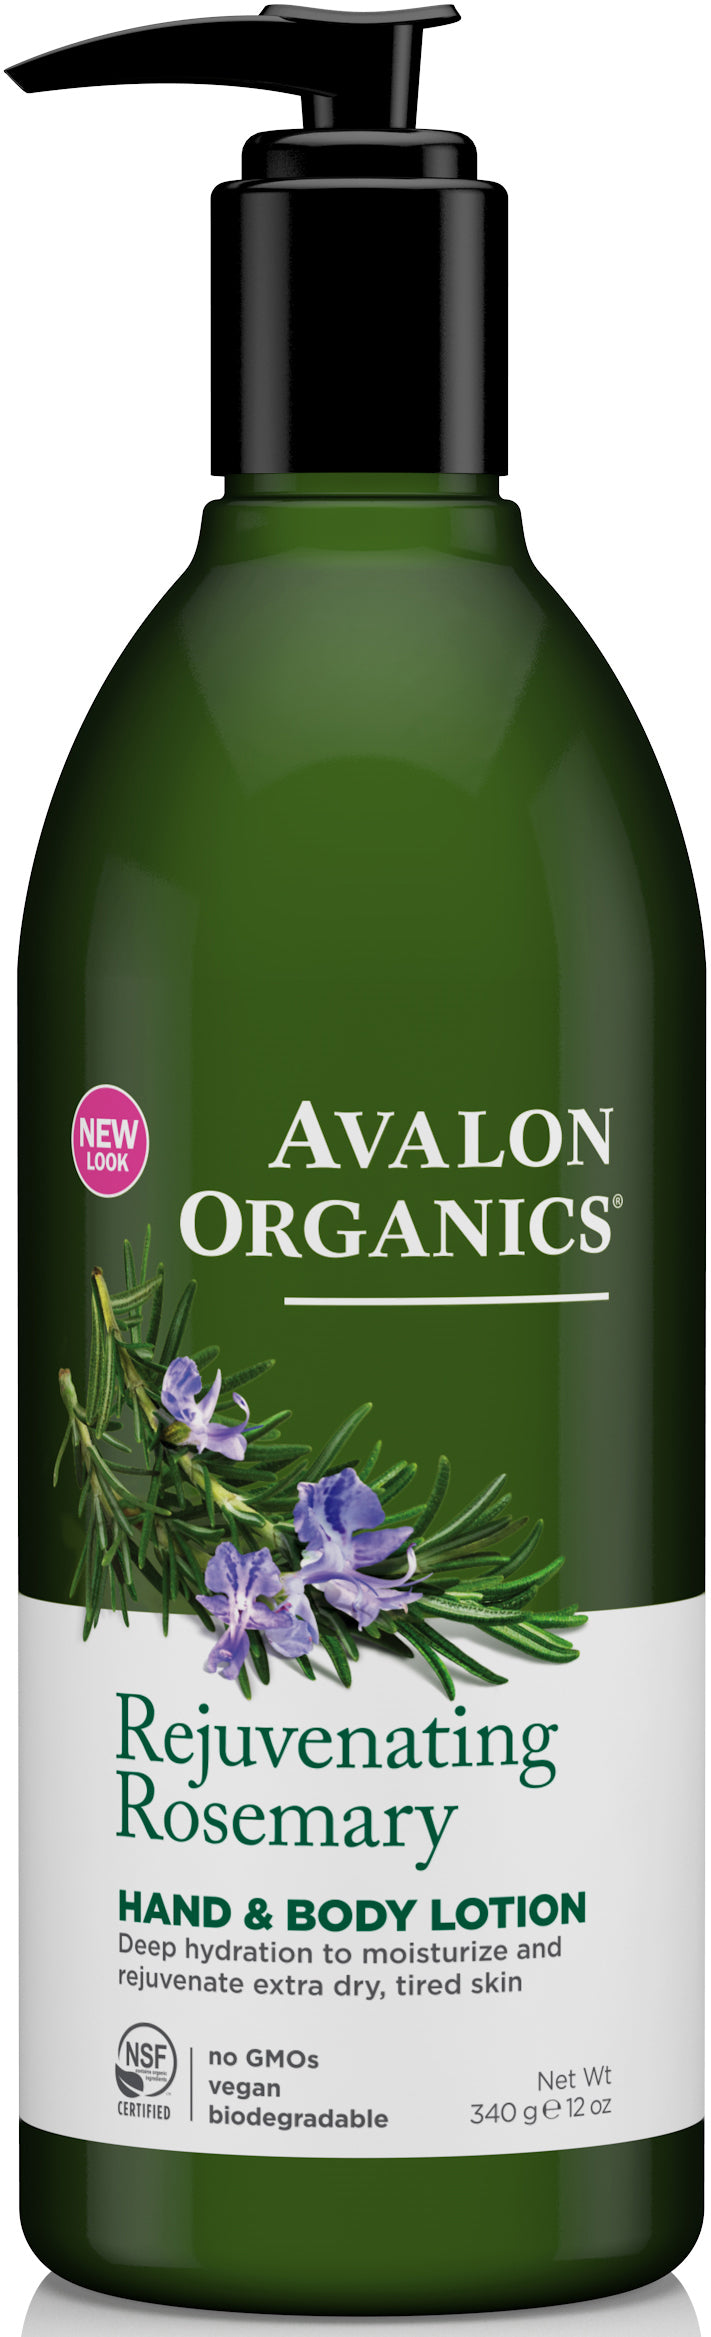 Avalon Organics Rosemary Hand and Body Lotion